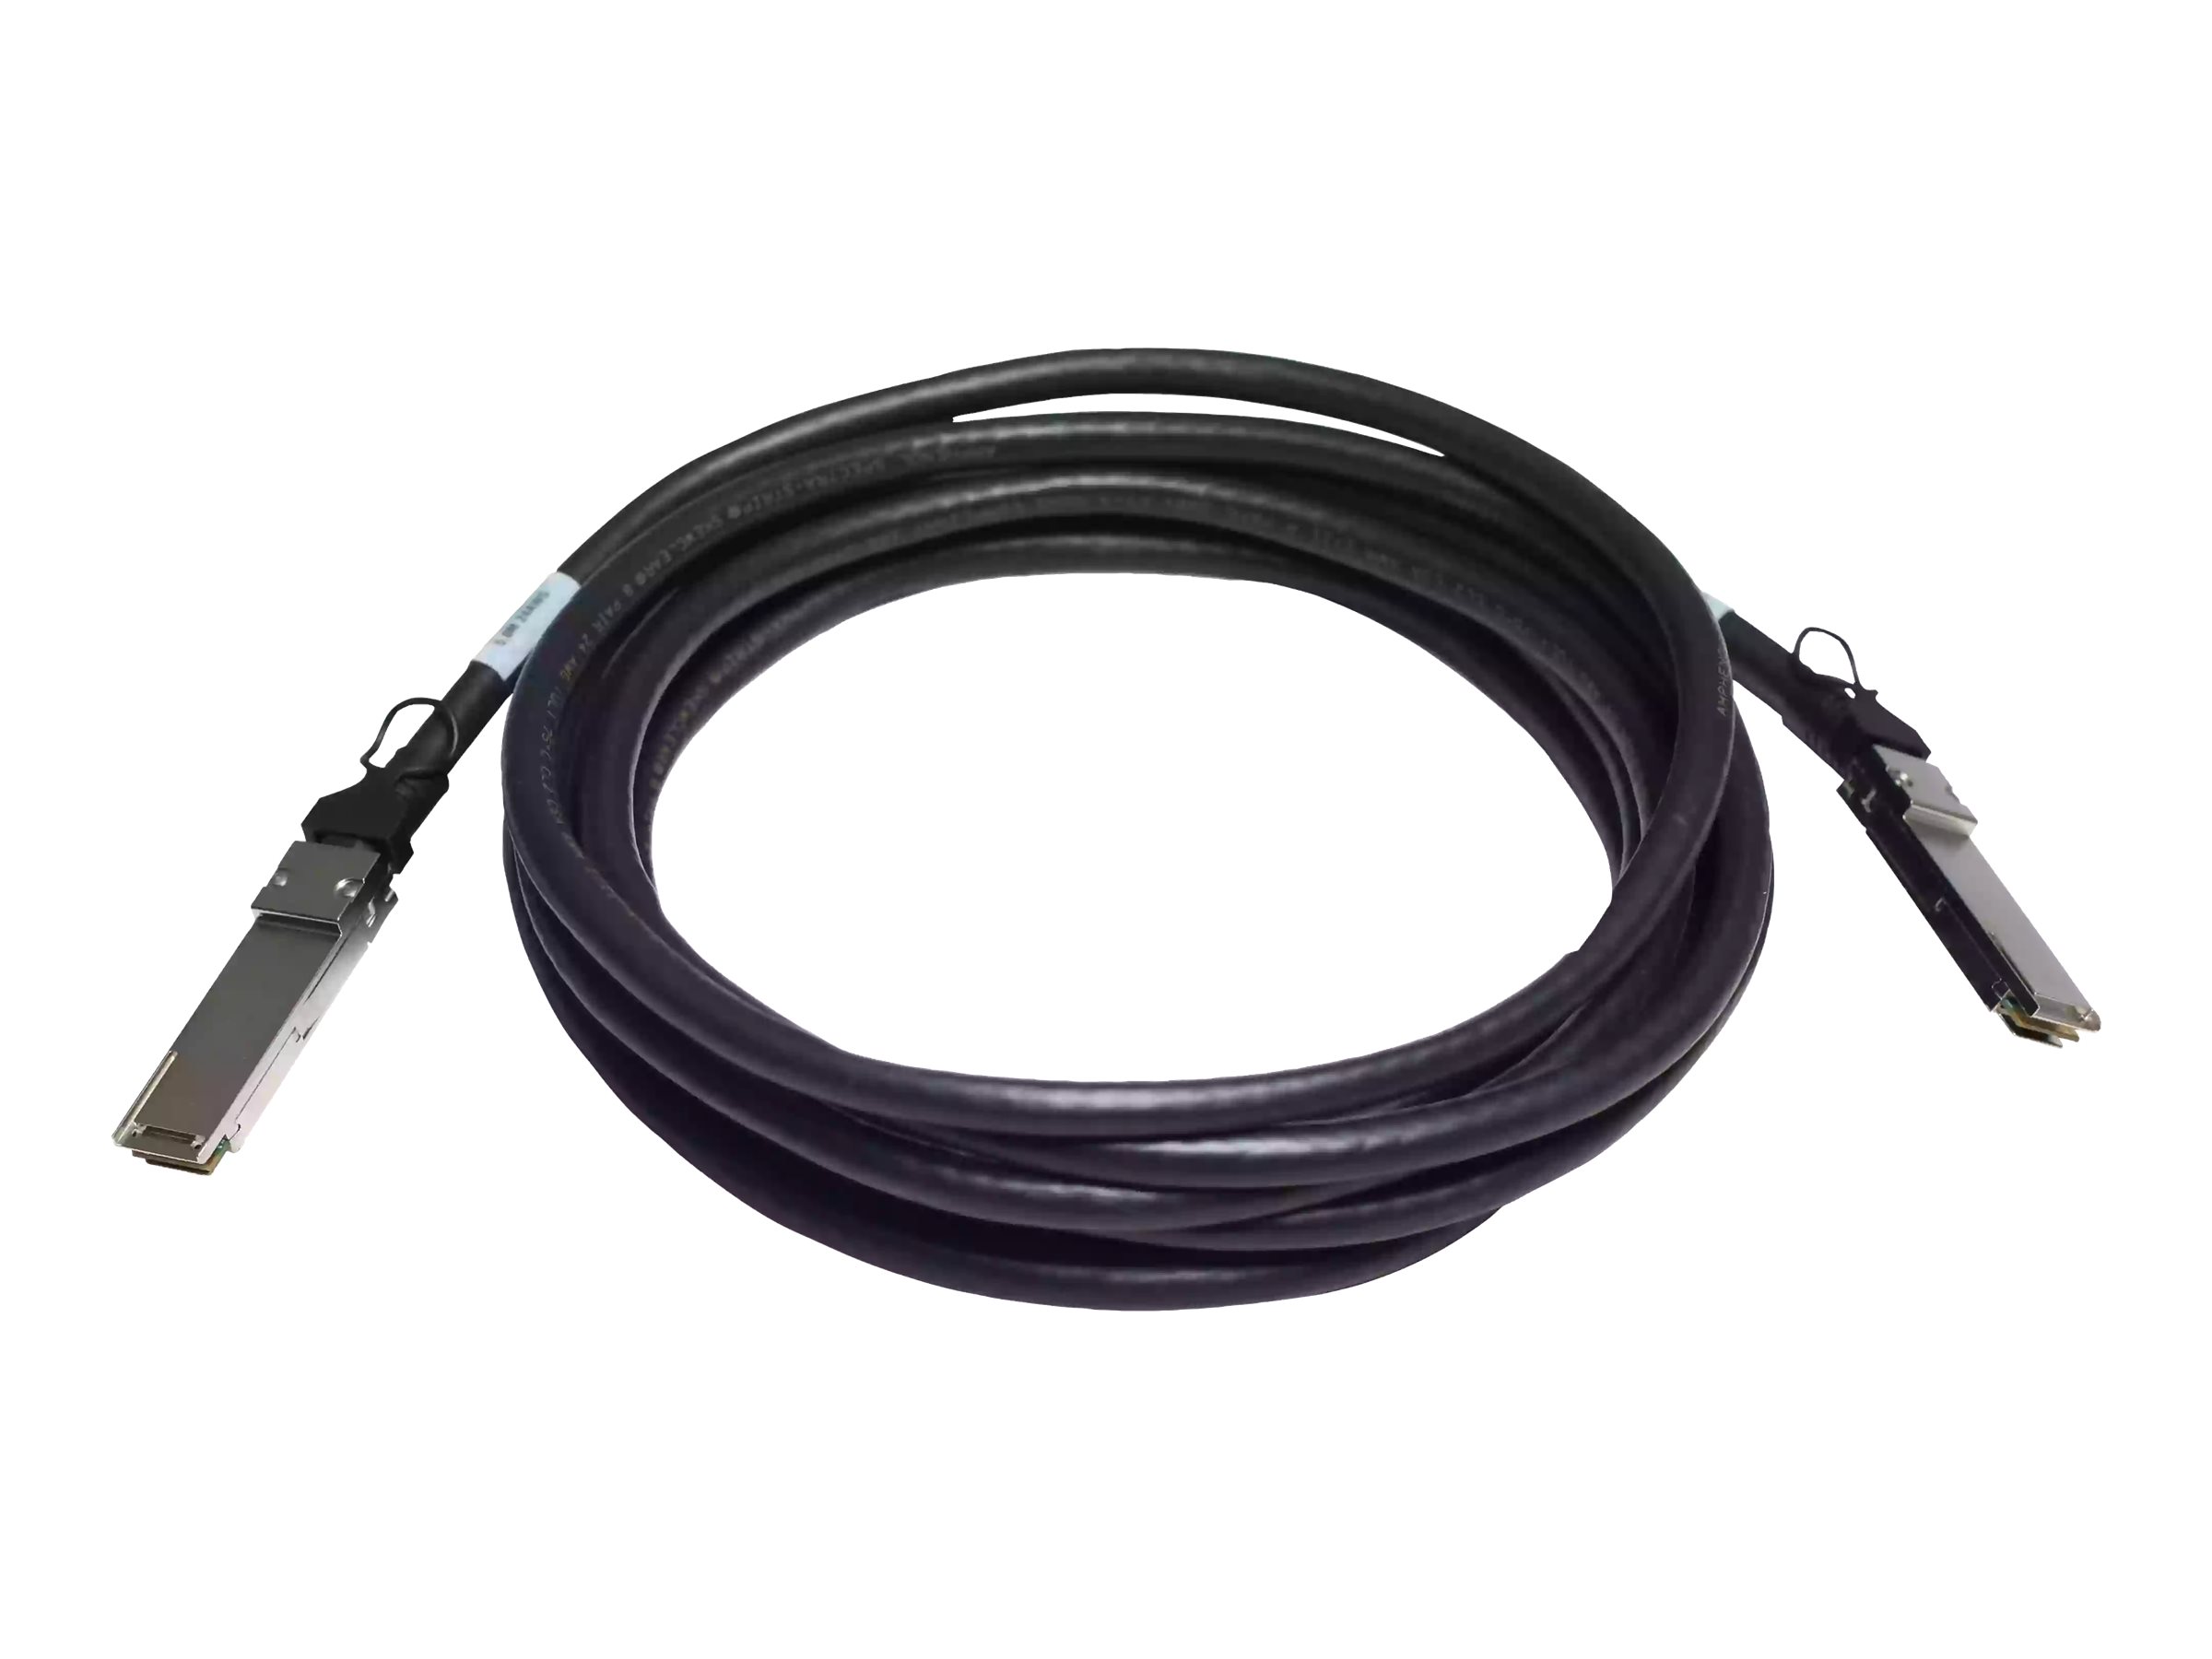 HPE X242 Direct Attach Copper Cable - Câble réseau - QSFP+ pour QSFP+ - 5 m - pour HPE Aruba 2930M 24, 8325-32C, 8325-48Y8C; CX 10000, 8360-12C V2, 8360-16Y2C V2 - JH236A - Câbles réseau spéciaux